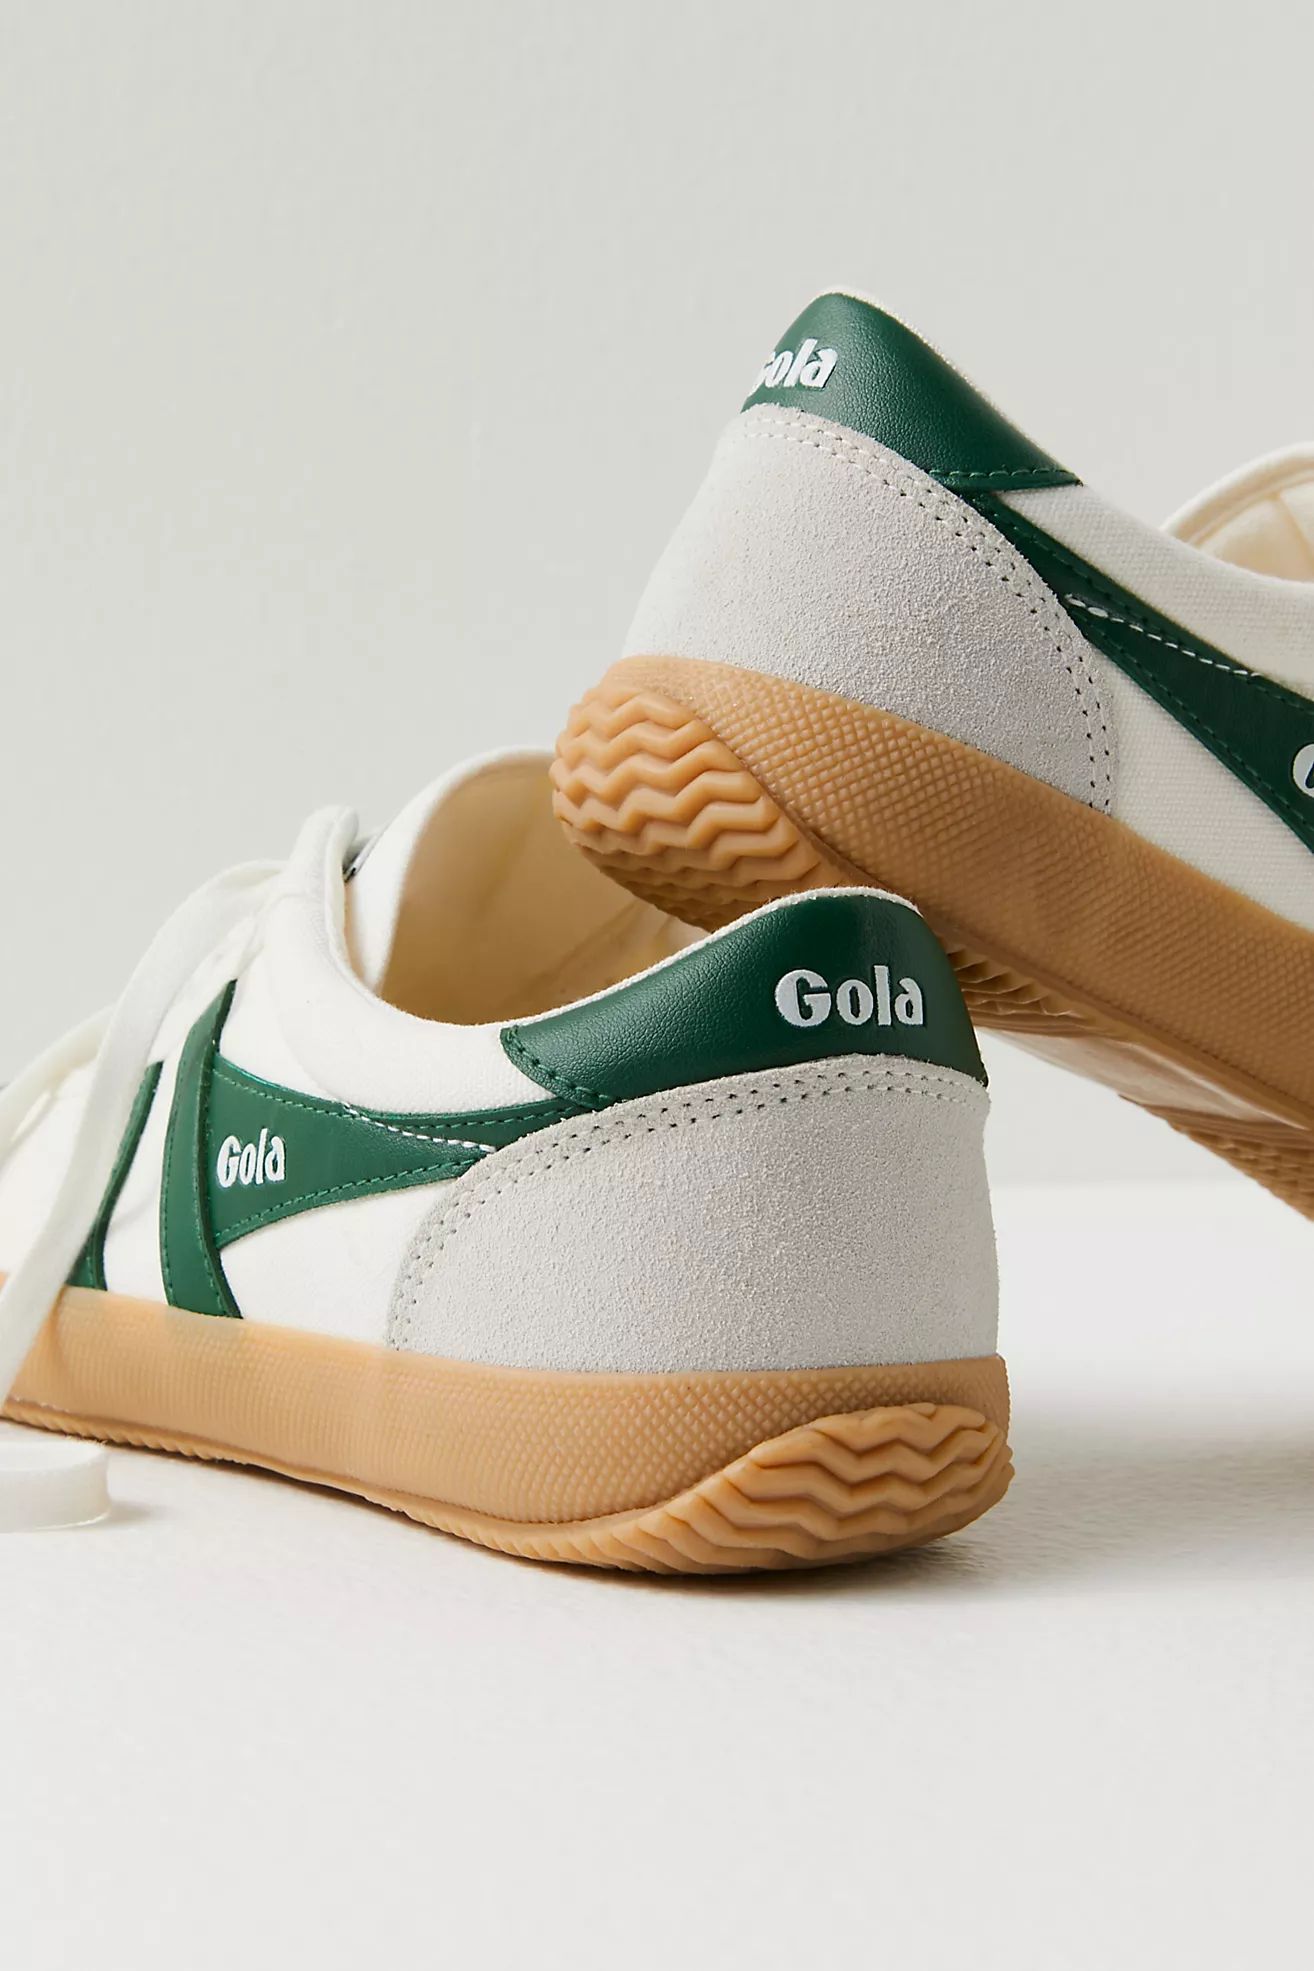 Gola Badminton Court Sneakers | Free People (Global - UK&FR Excluded)